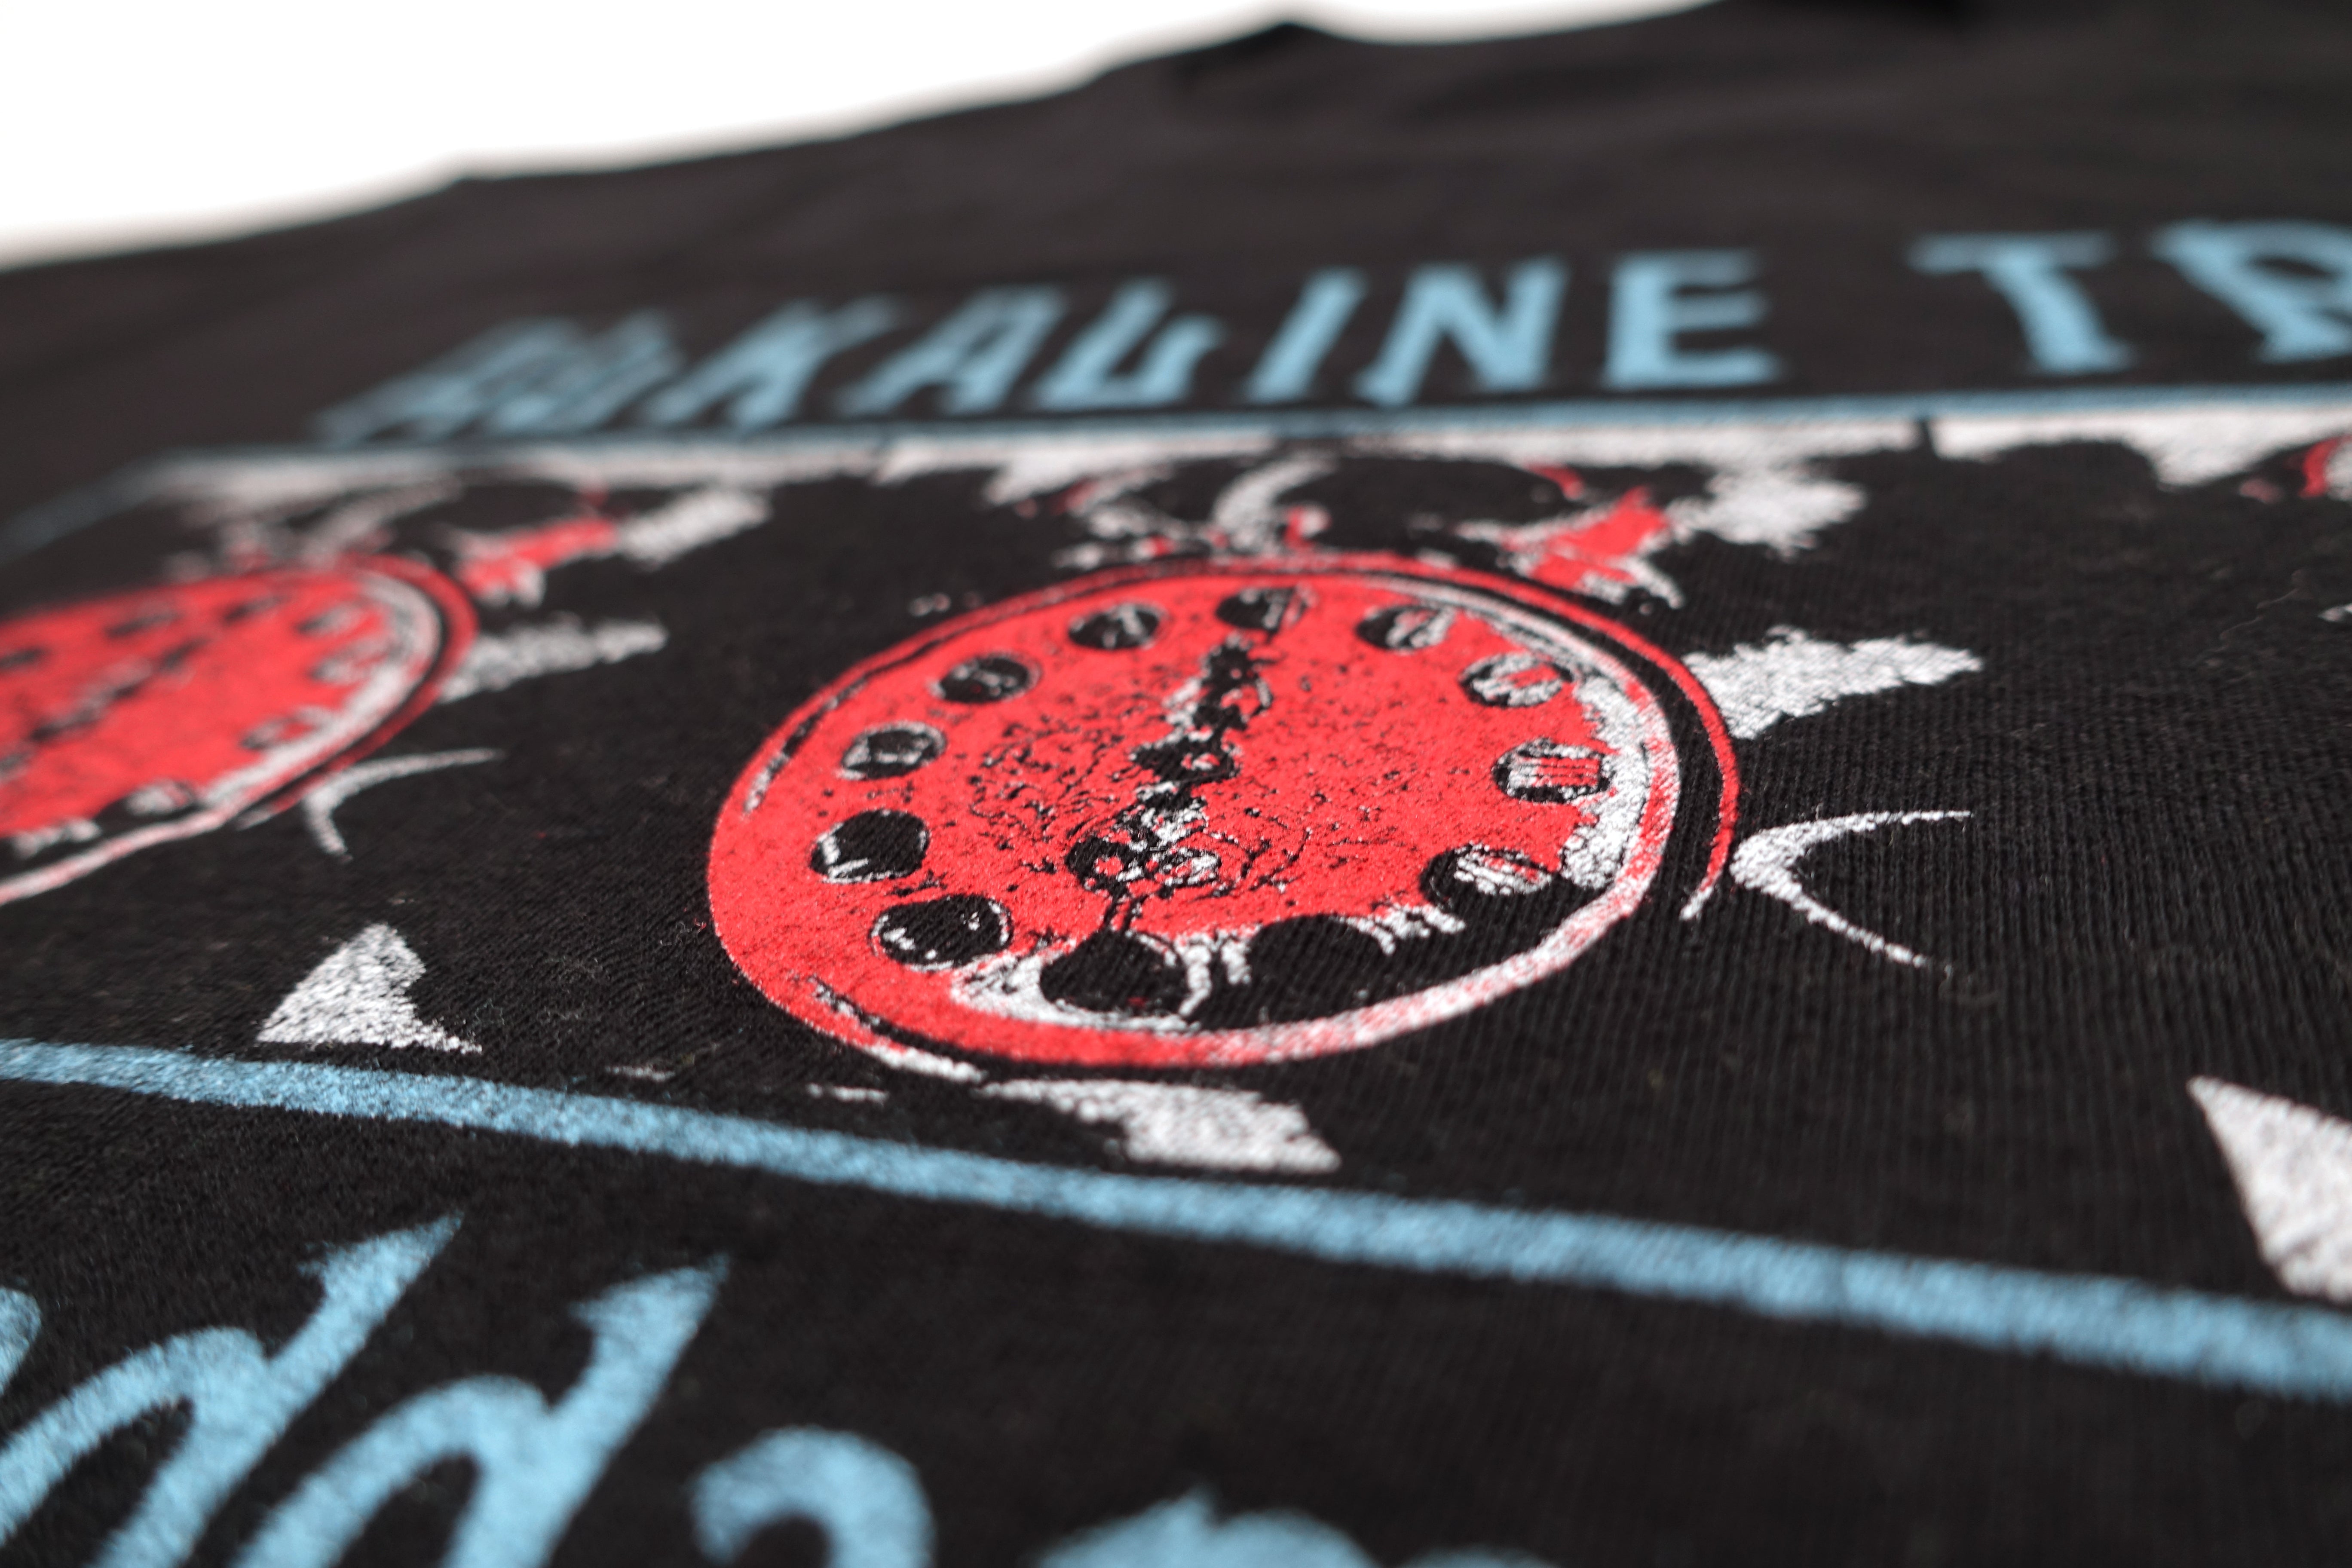 Alkaline Trio – Goddammit Shirt Size Large